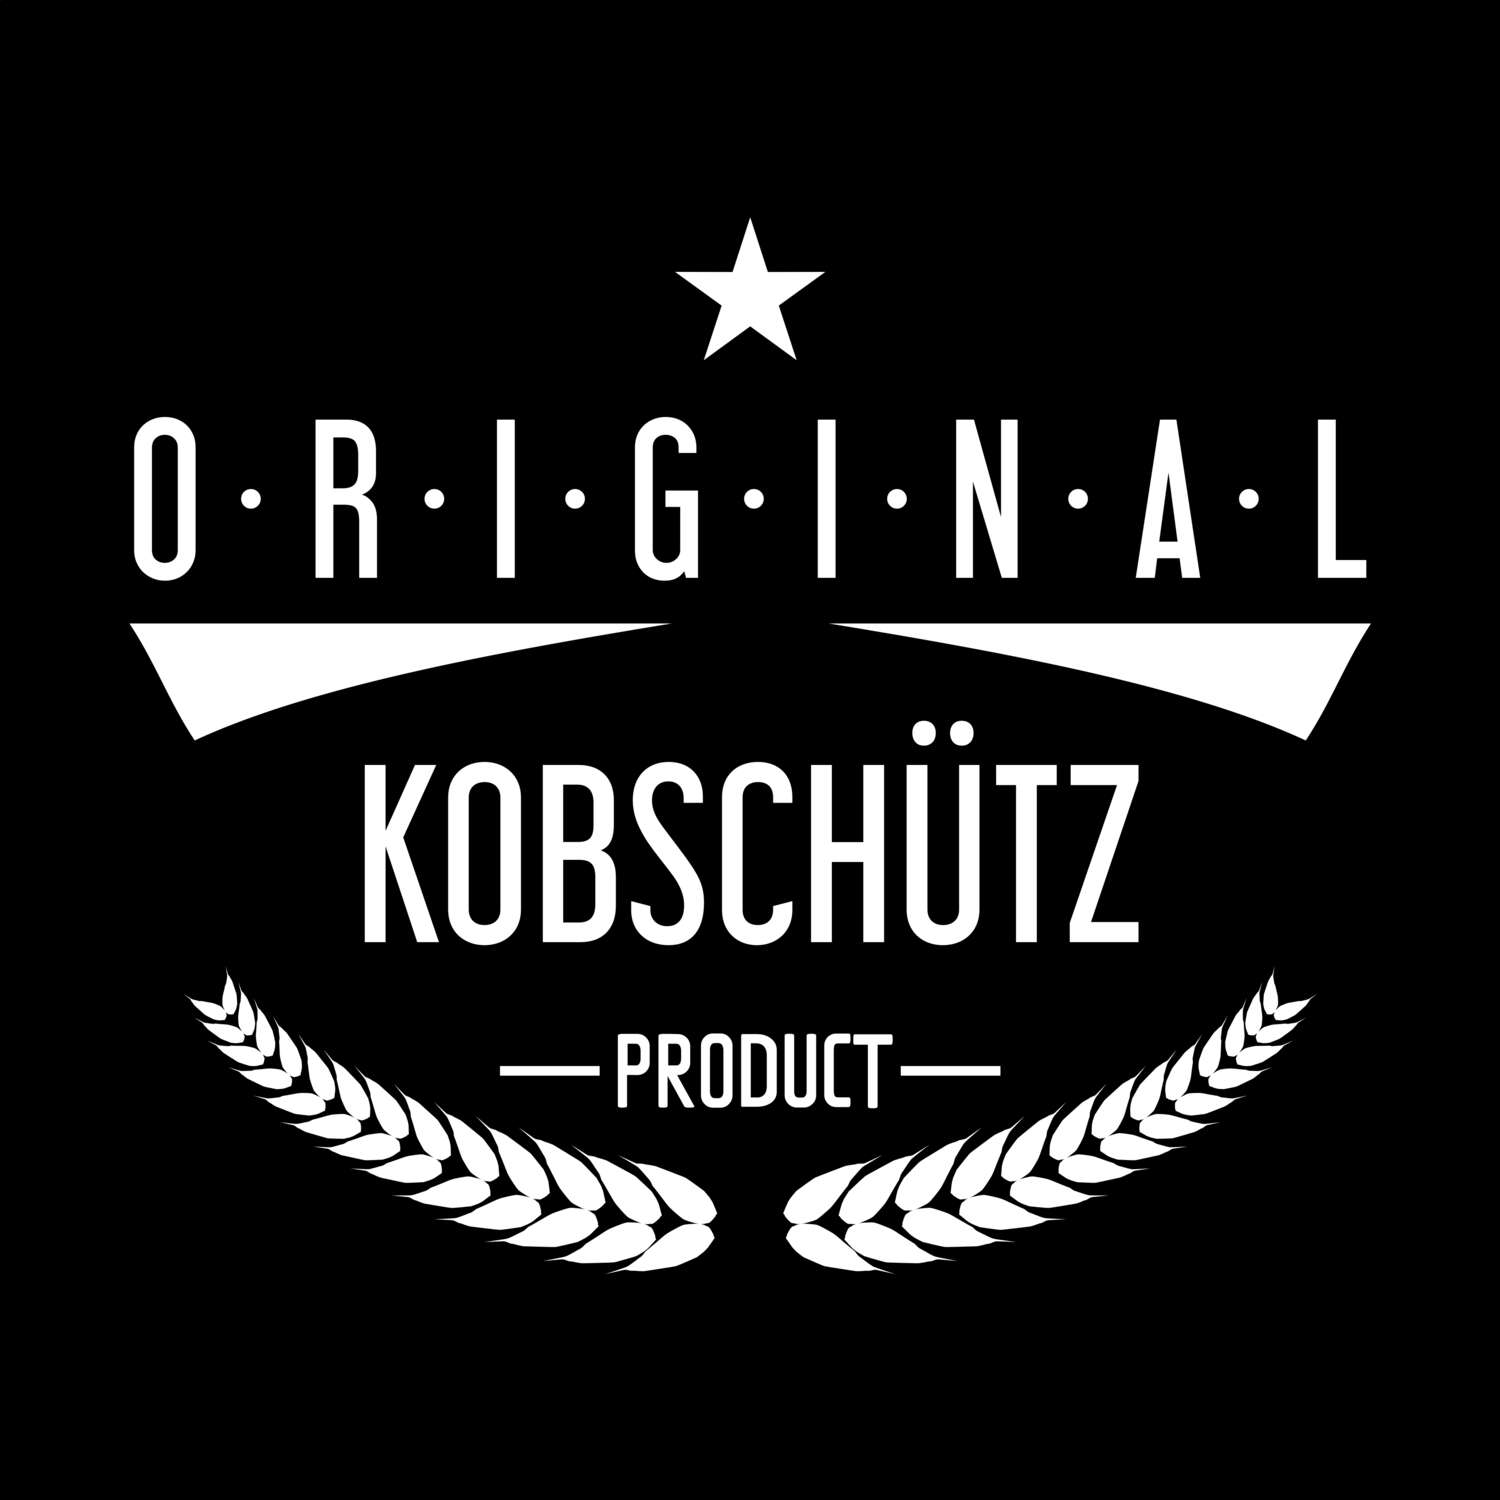 Kobschütz T-Shirt »Original Product«